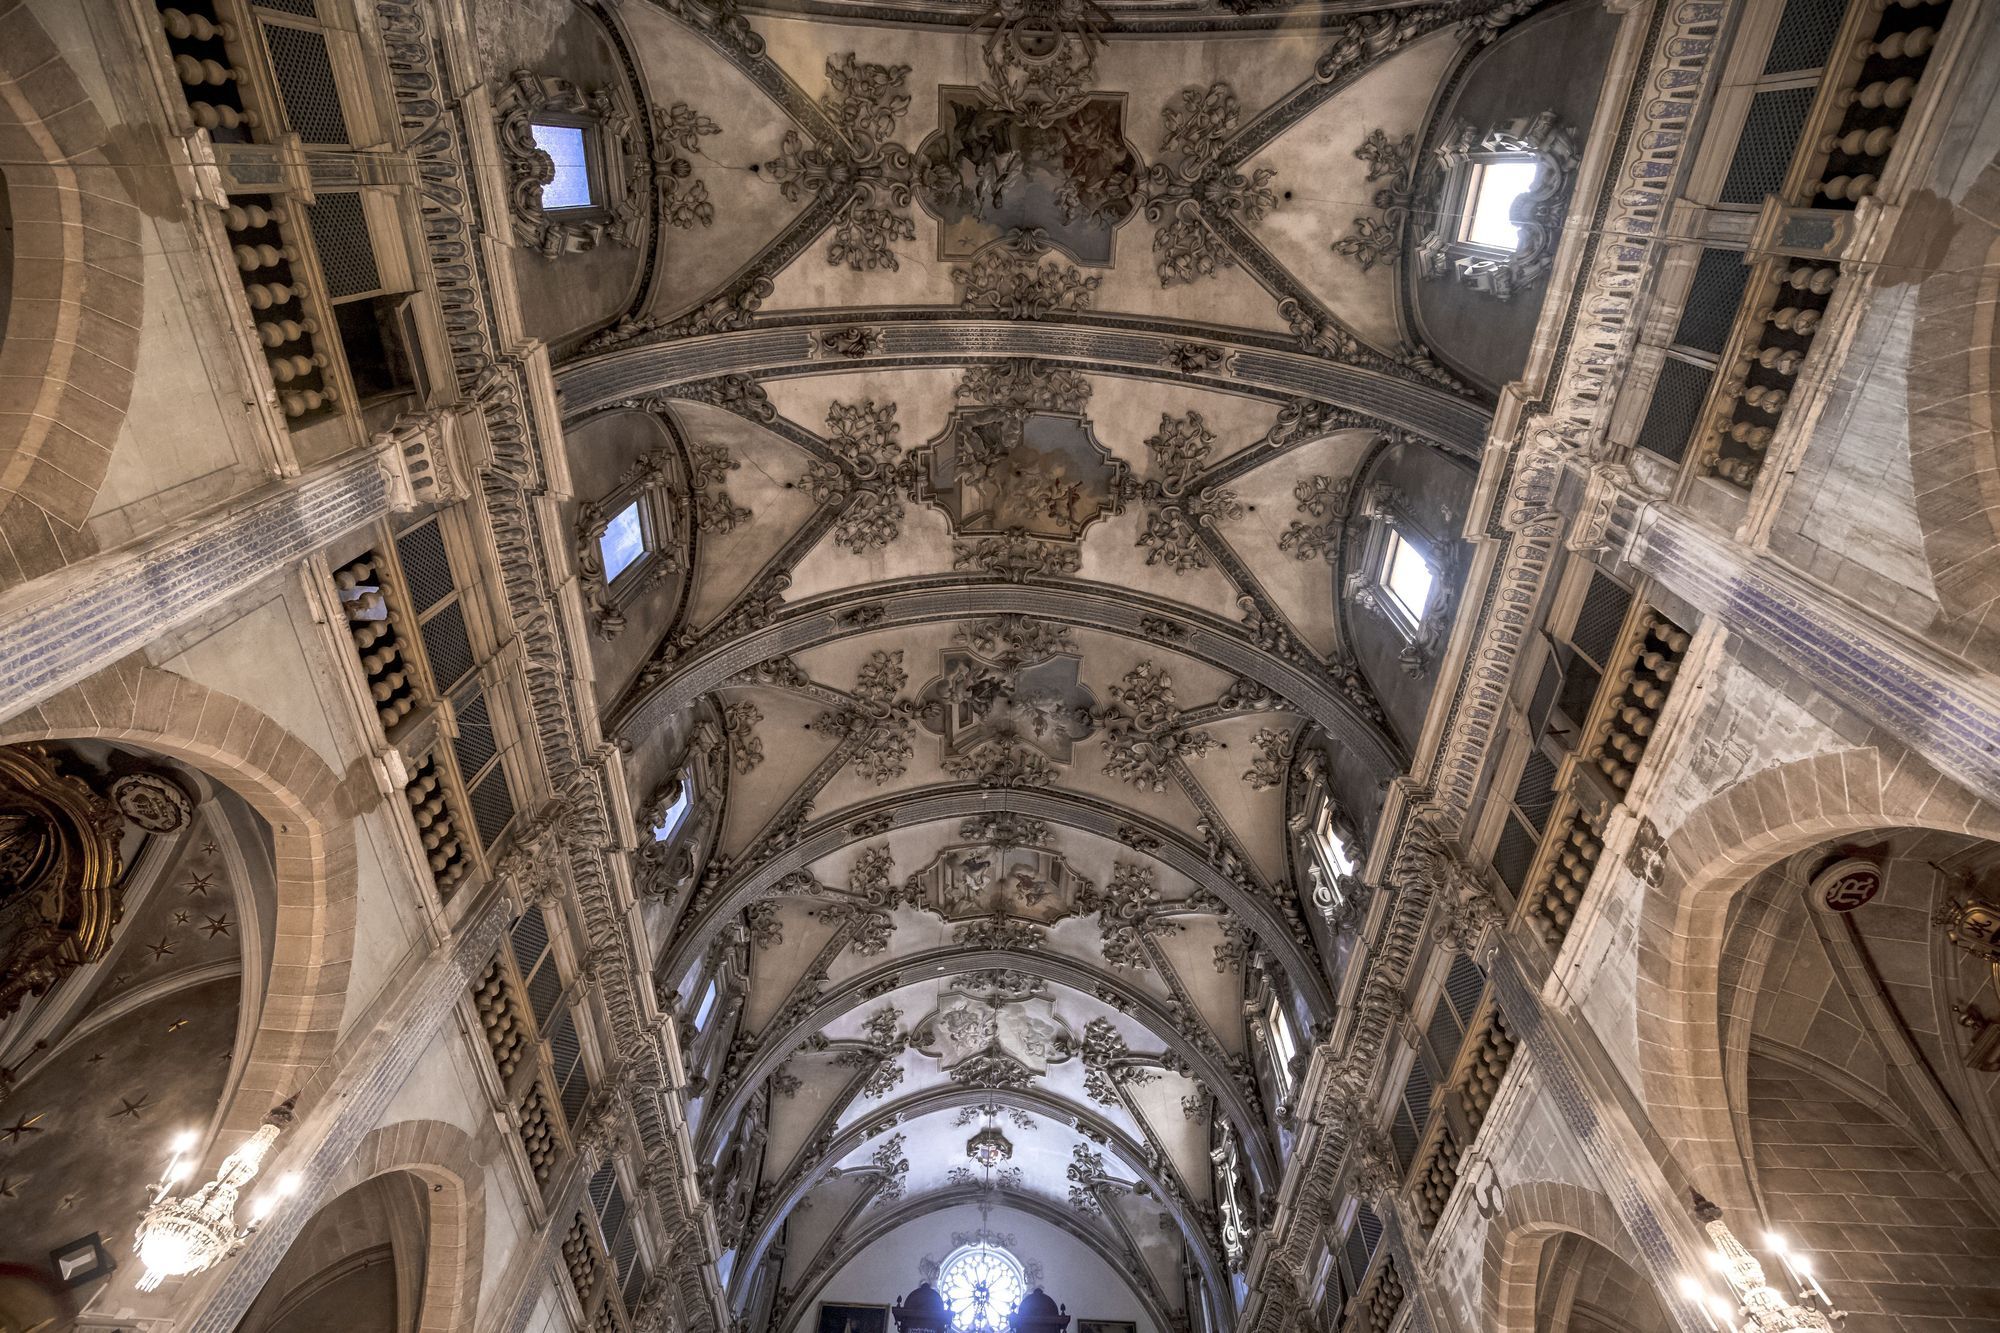 Fotogalerie: So sieht die spektakuläre Kirche Montision in Palma de Mallorca aus, die jetzt renoviert wird